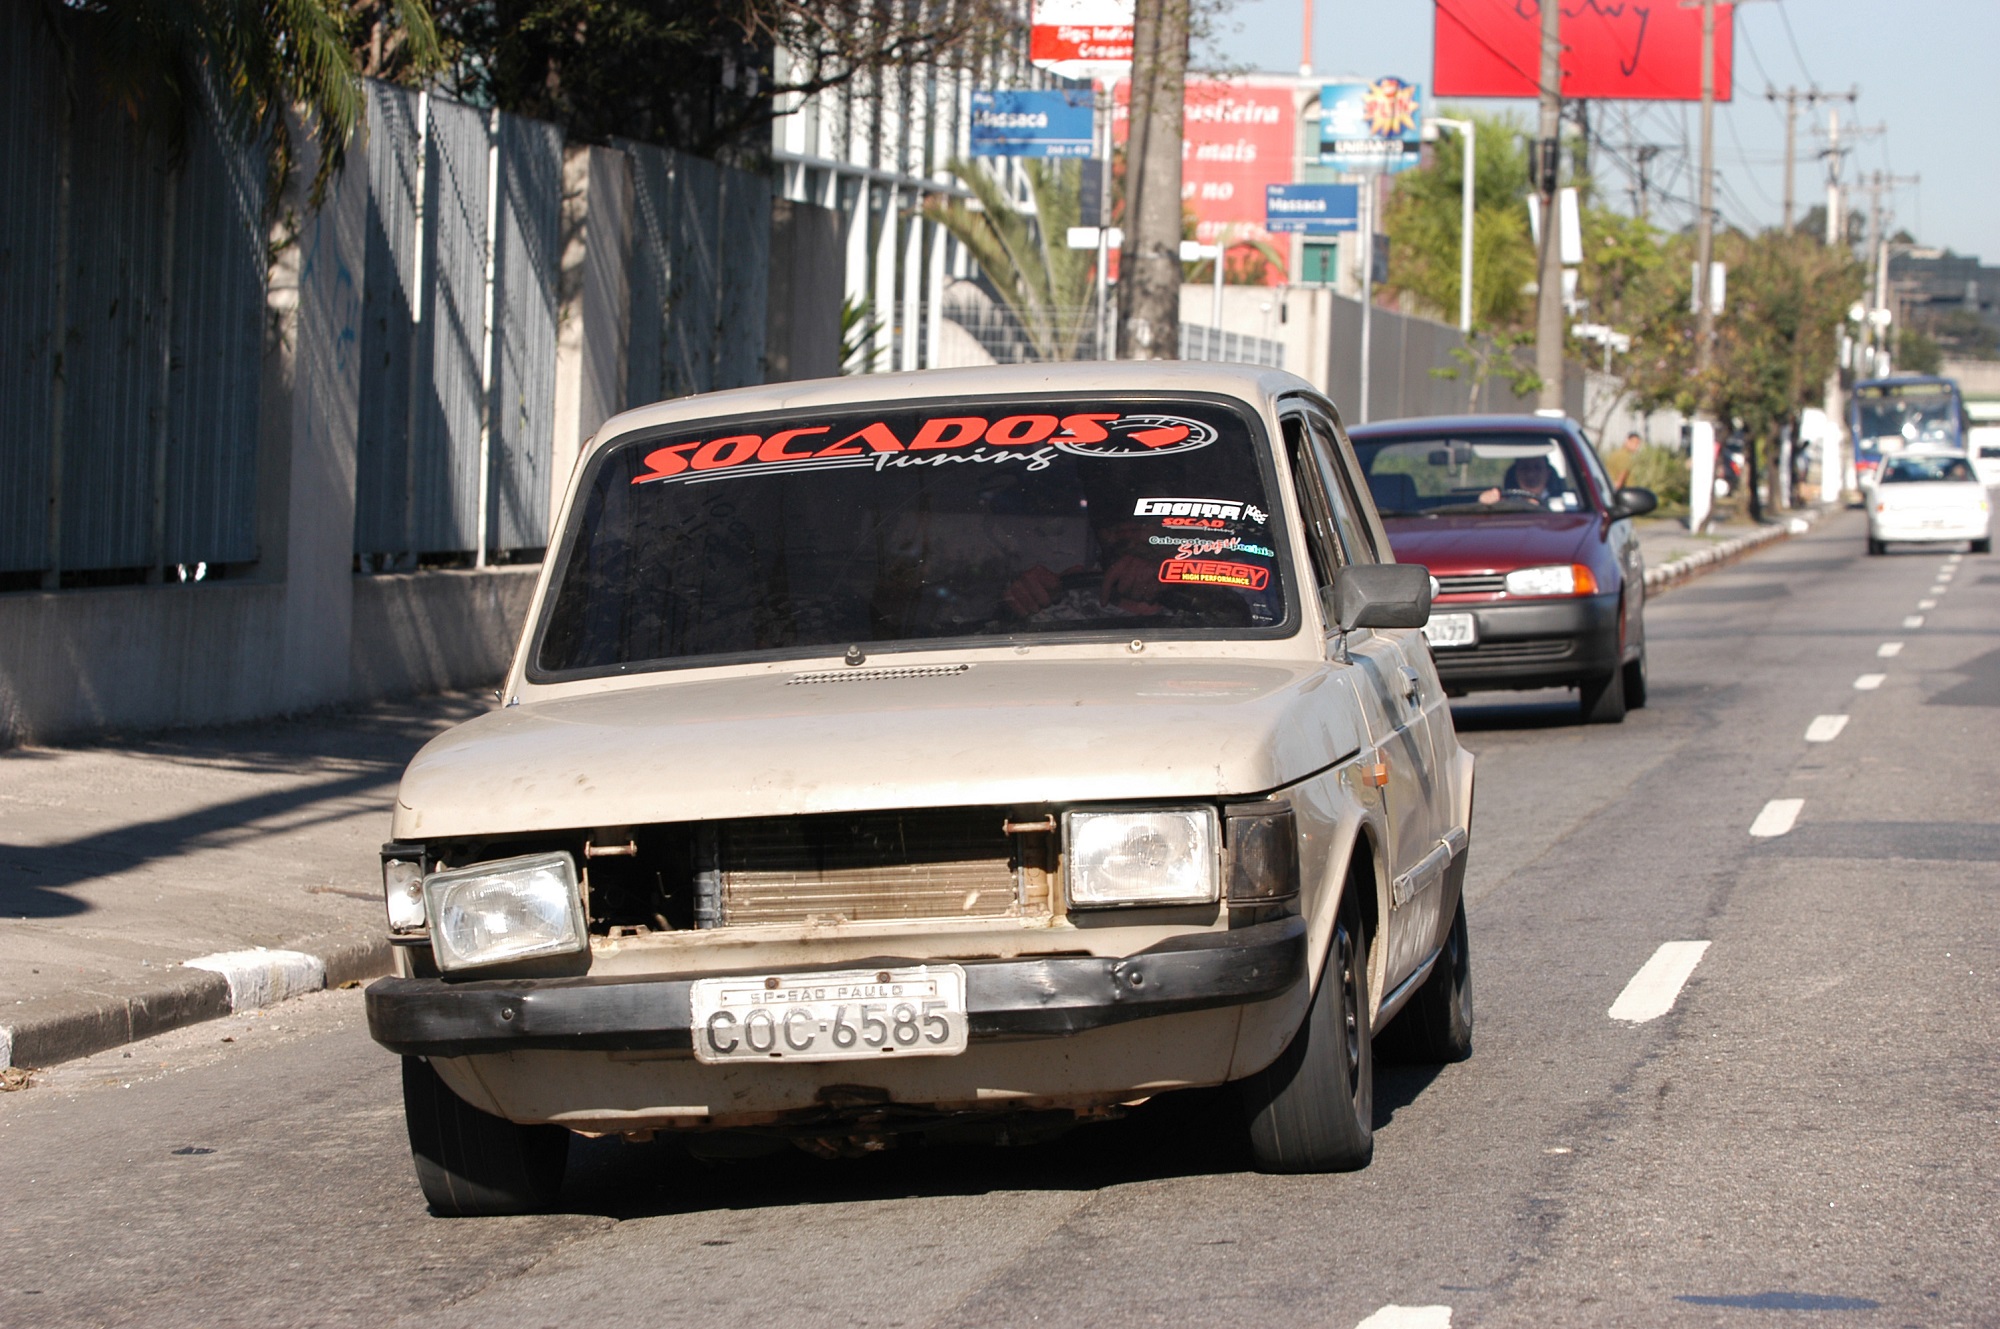 Fiat 147 em péssimo estado de conservação e com documentação irregular, dirigido por Sérgio Ruiz, editor da Revista Quatro Rodas, para matéria demonstrando qua a fiscalização é ineficaz.